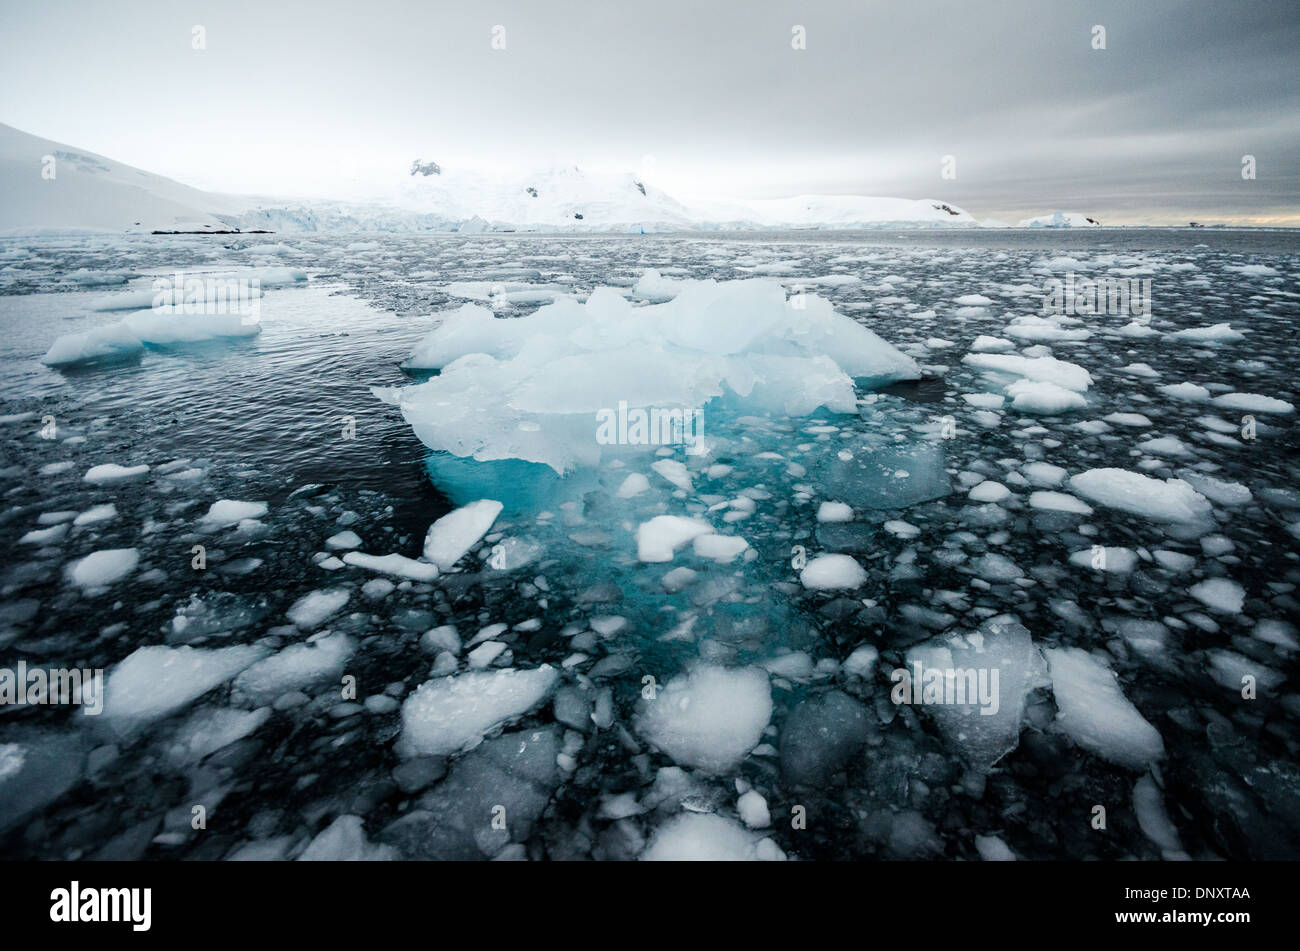 Antarktis - kleine Stücke Eis und brash Eis schweben auf dem Wasser von Curtis Bucht, Antarktis. Weil die salzigen Meerwasser Temperatur bei oder unter dem Gefrierpunkt der Süßwasser-Eis, das Eis bleibt für längere Zeit eingefroren. Stockfoto